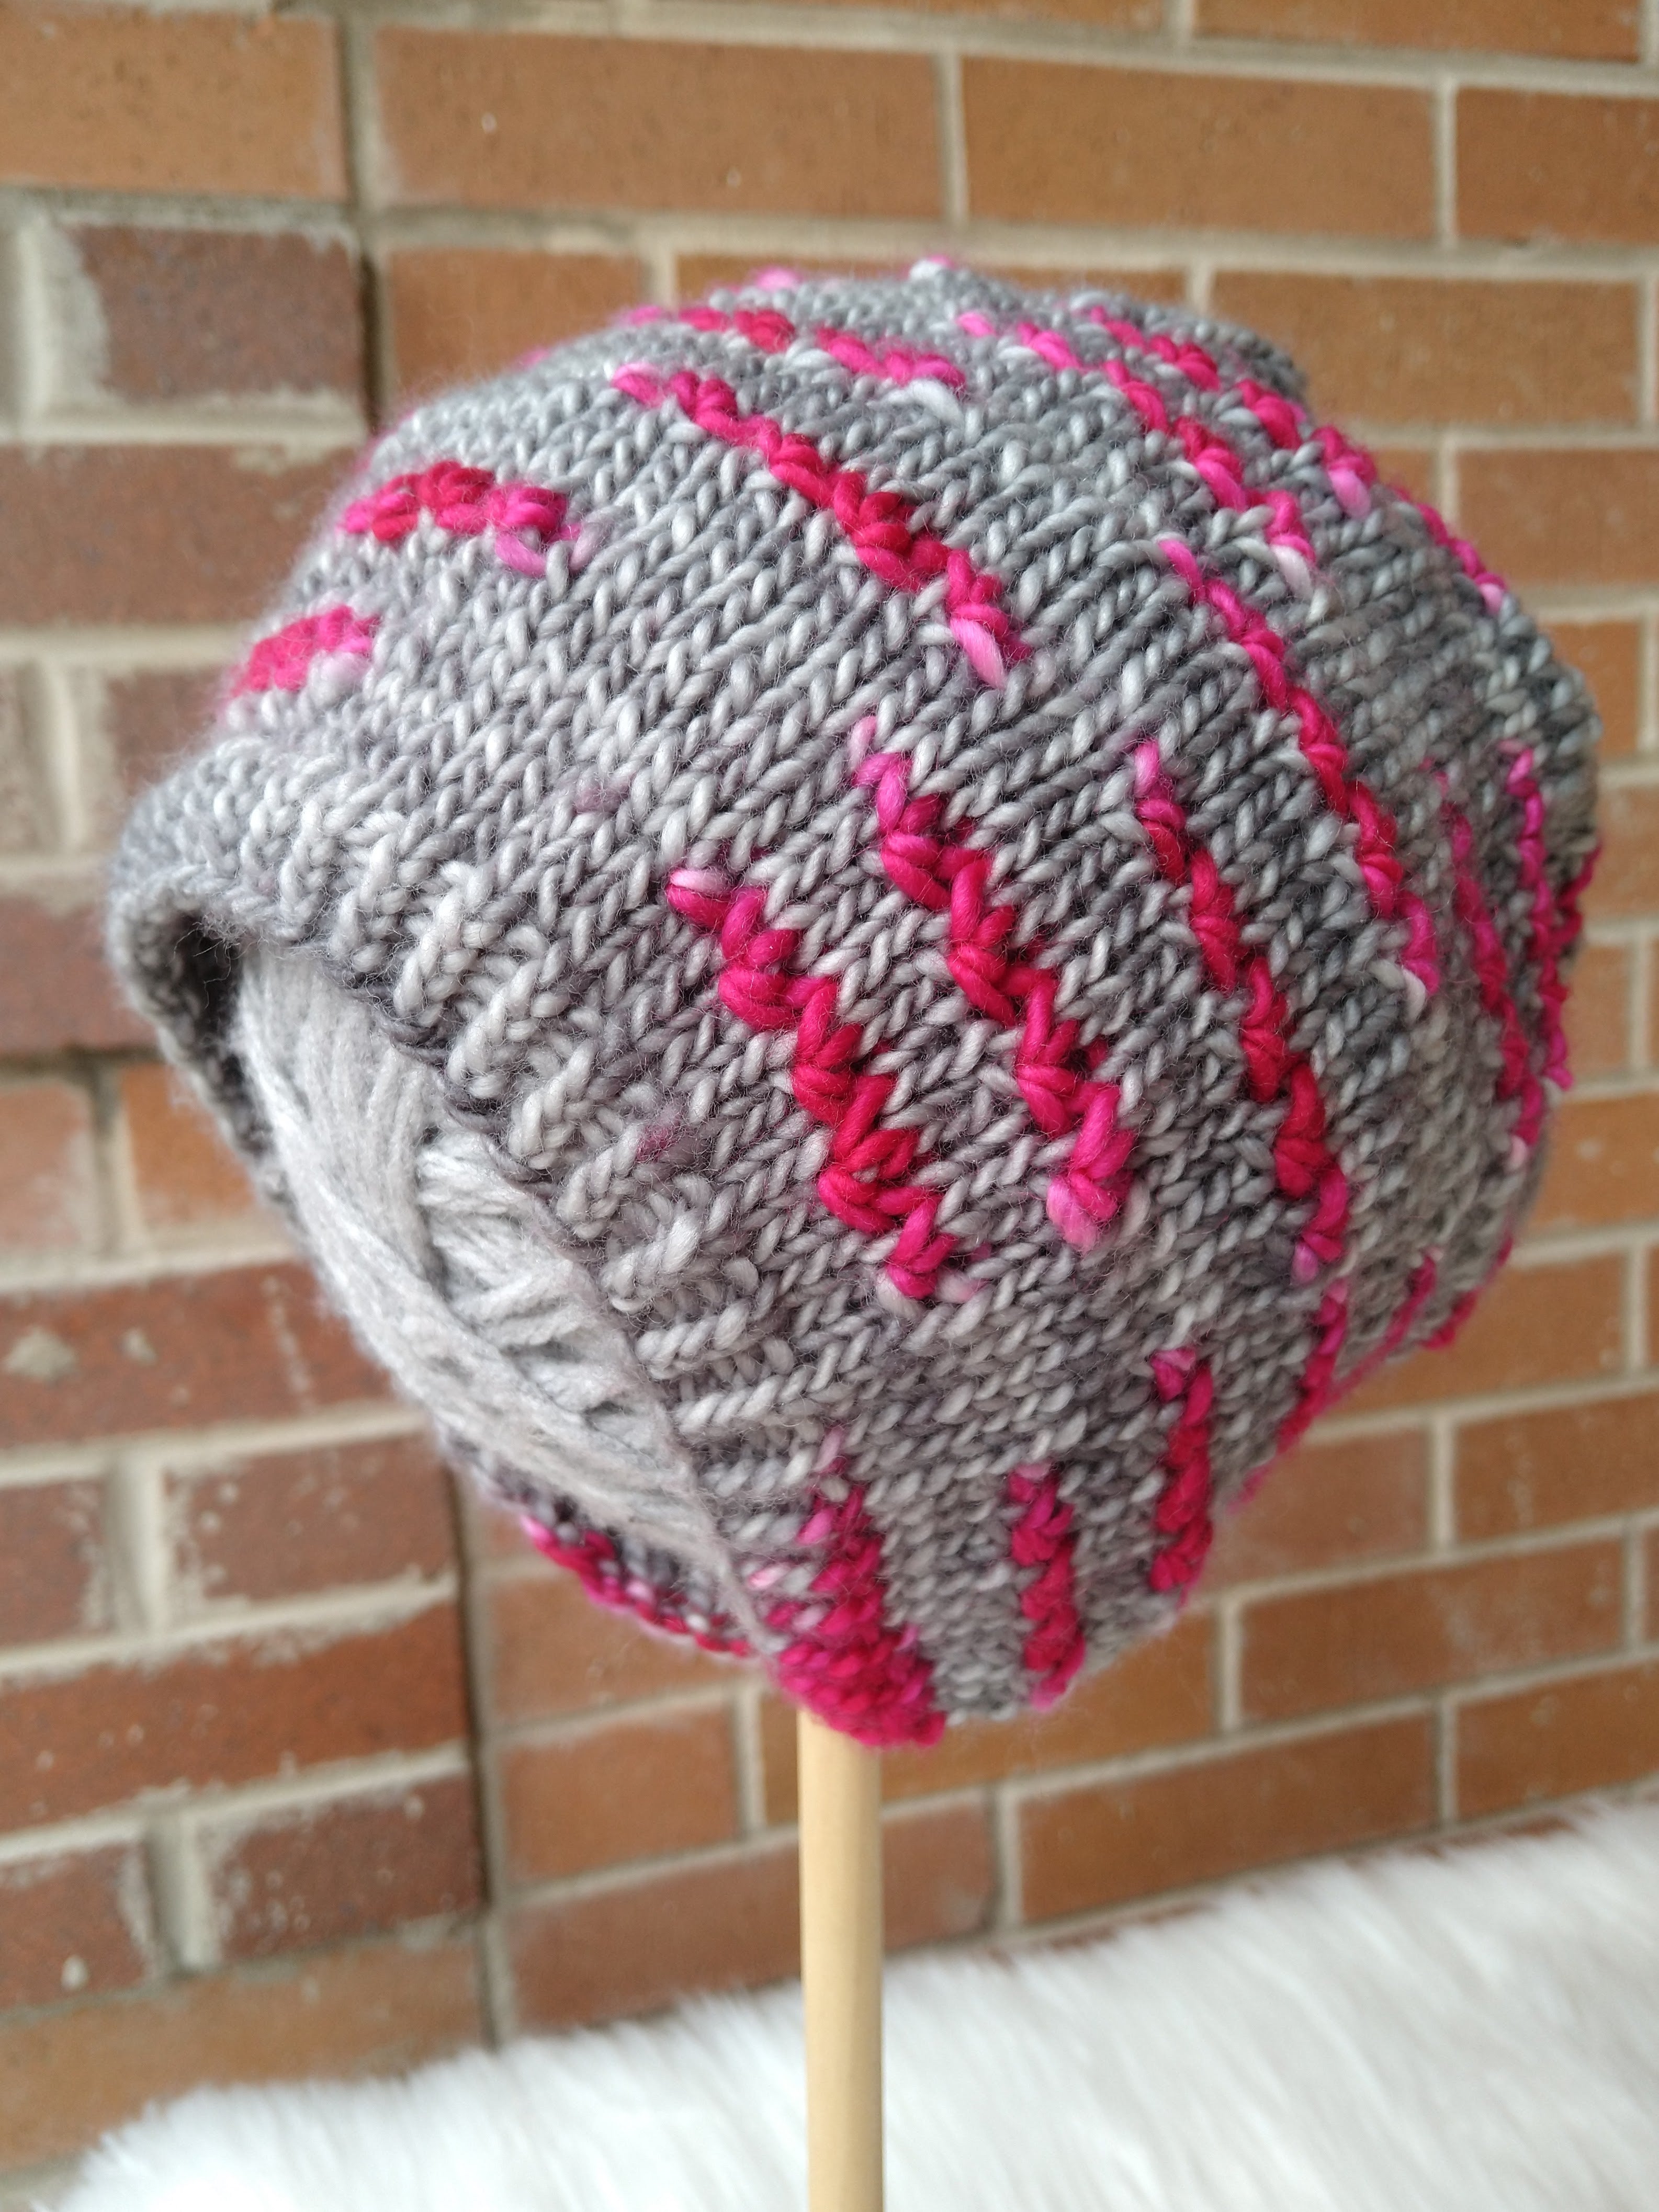 Insulbrite for potholders  Knitting and Crochet Forum